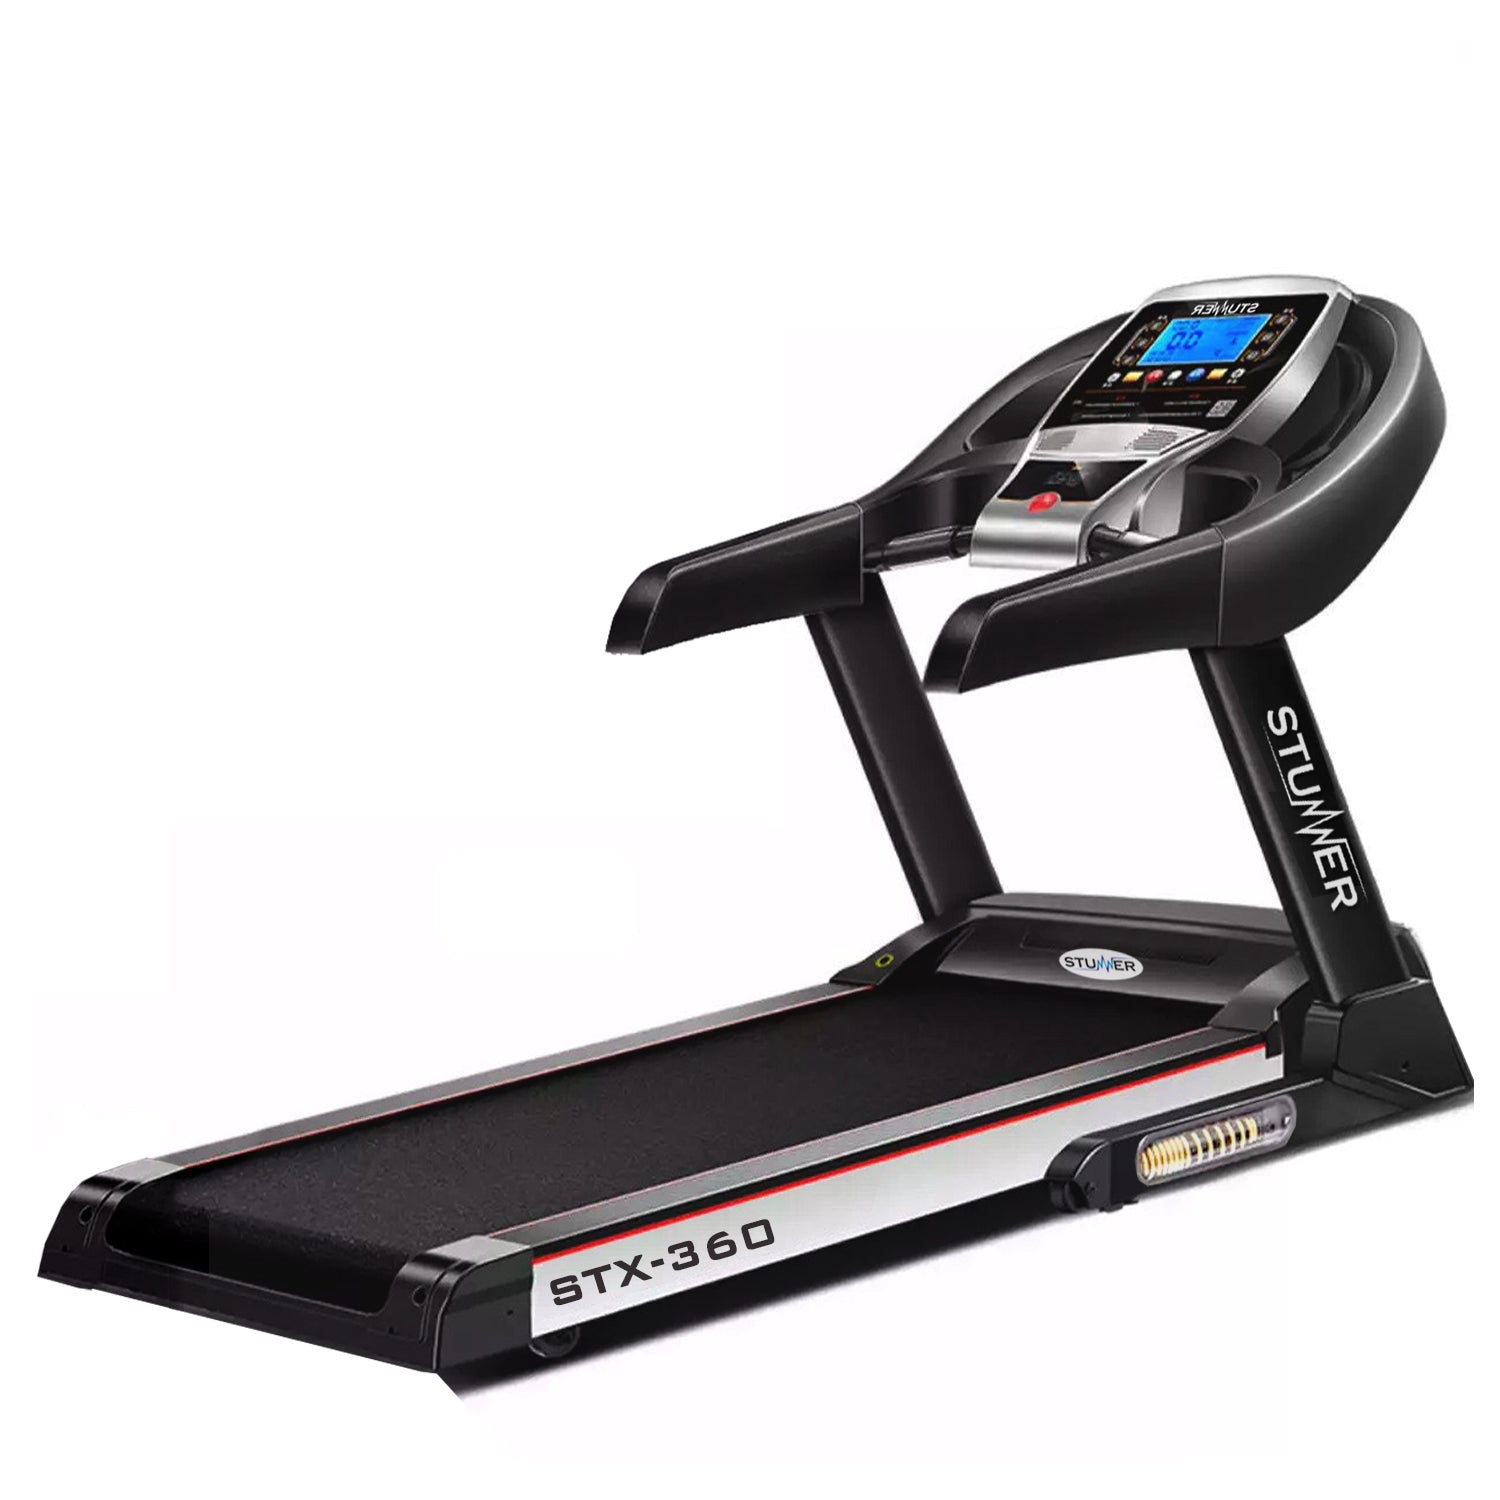 STX-360 Motorised Treadmill